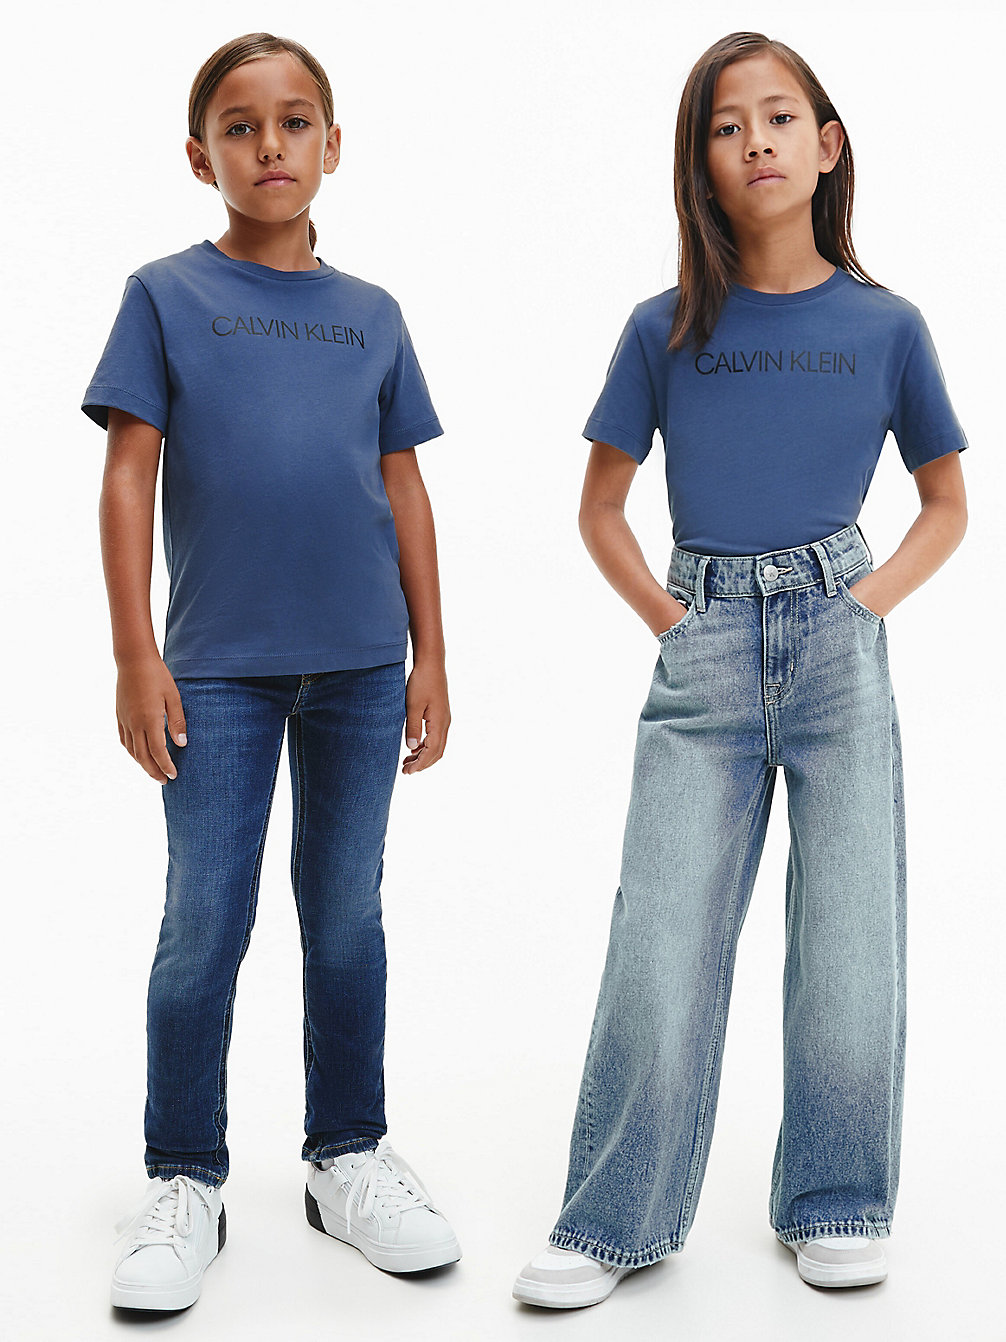 AEGEAN SEA > Unisex T-Shirt Van Biologisch Katoen Met Logo > undefined kids unisex - Calvin Klein